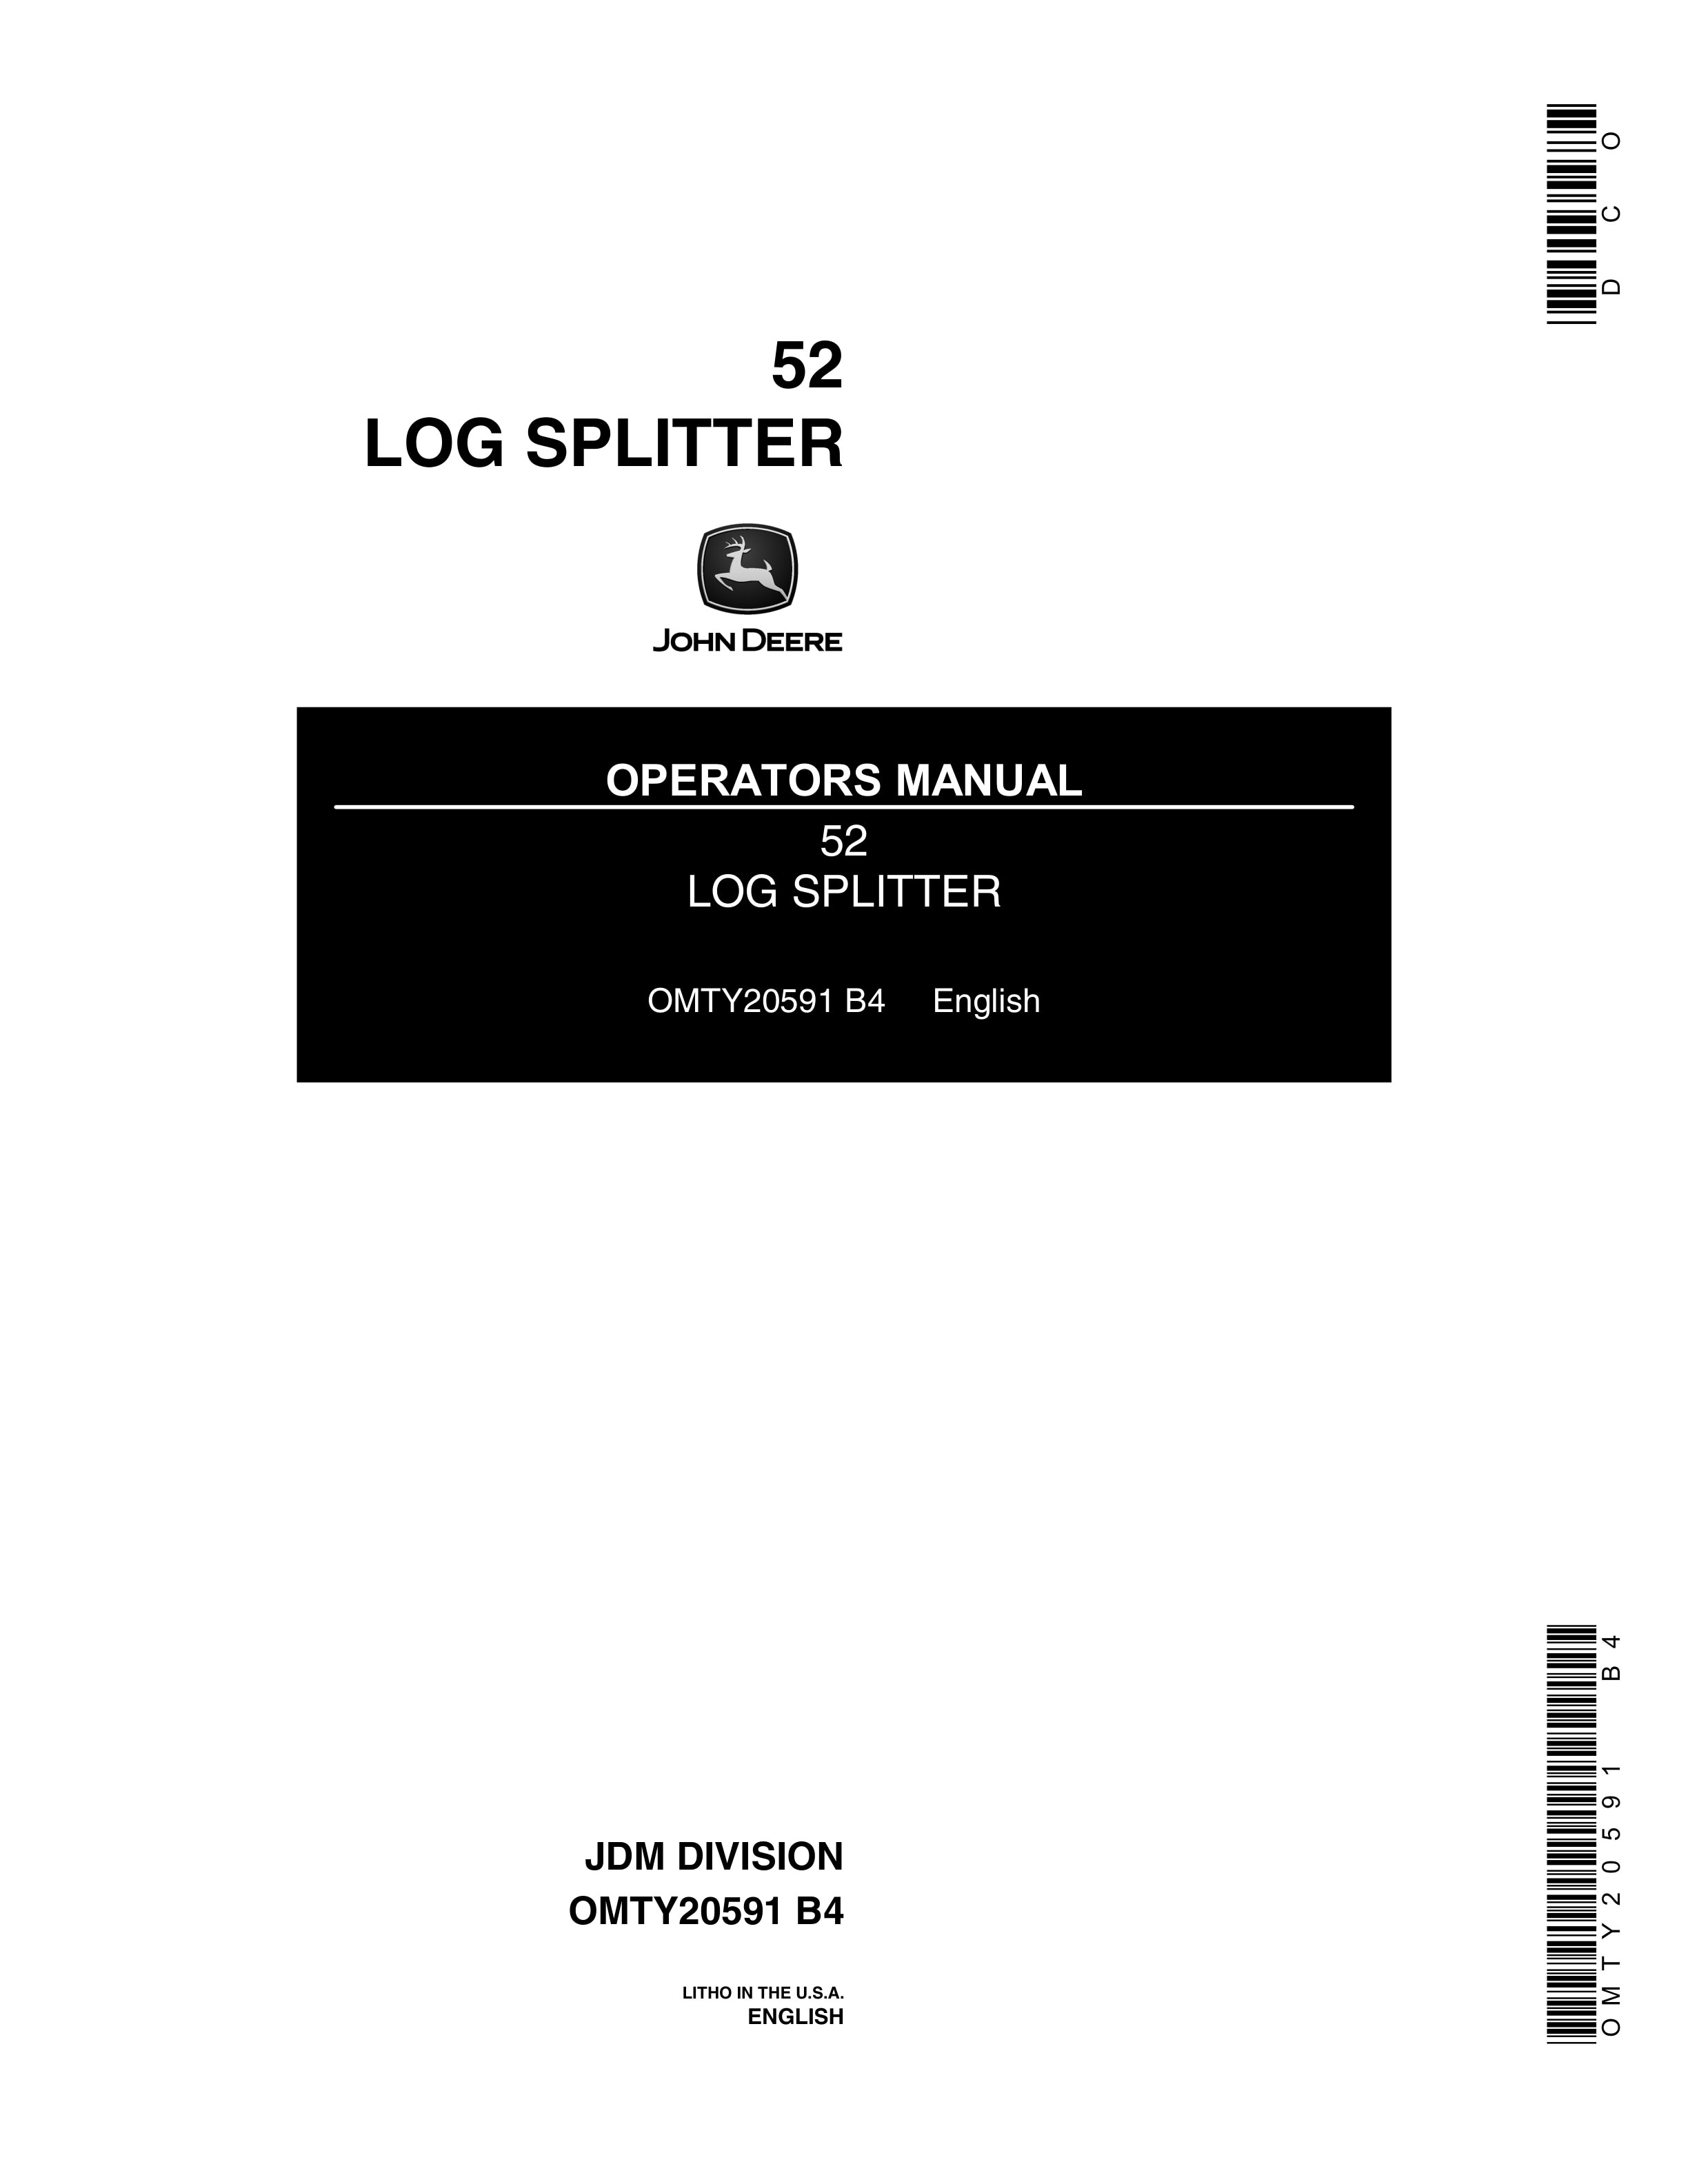 John Deere 52 Log SPLITTER Operator Manual OMTY20591 1